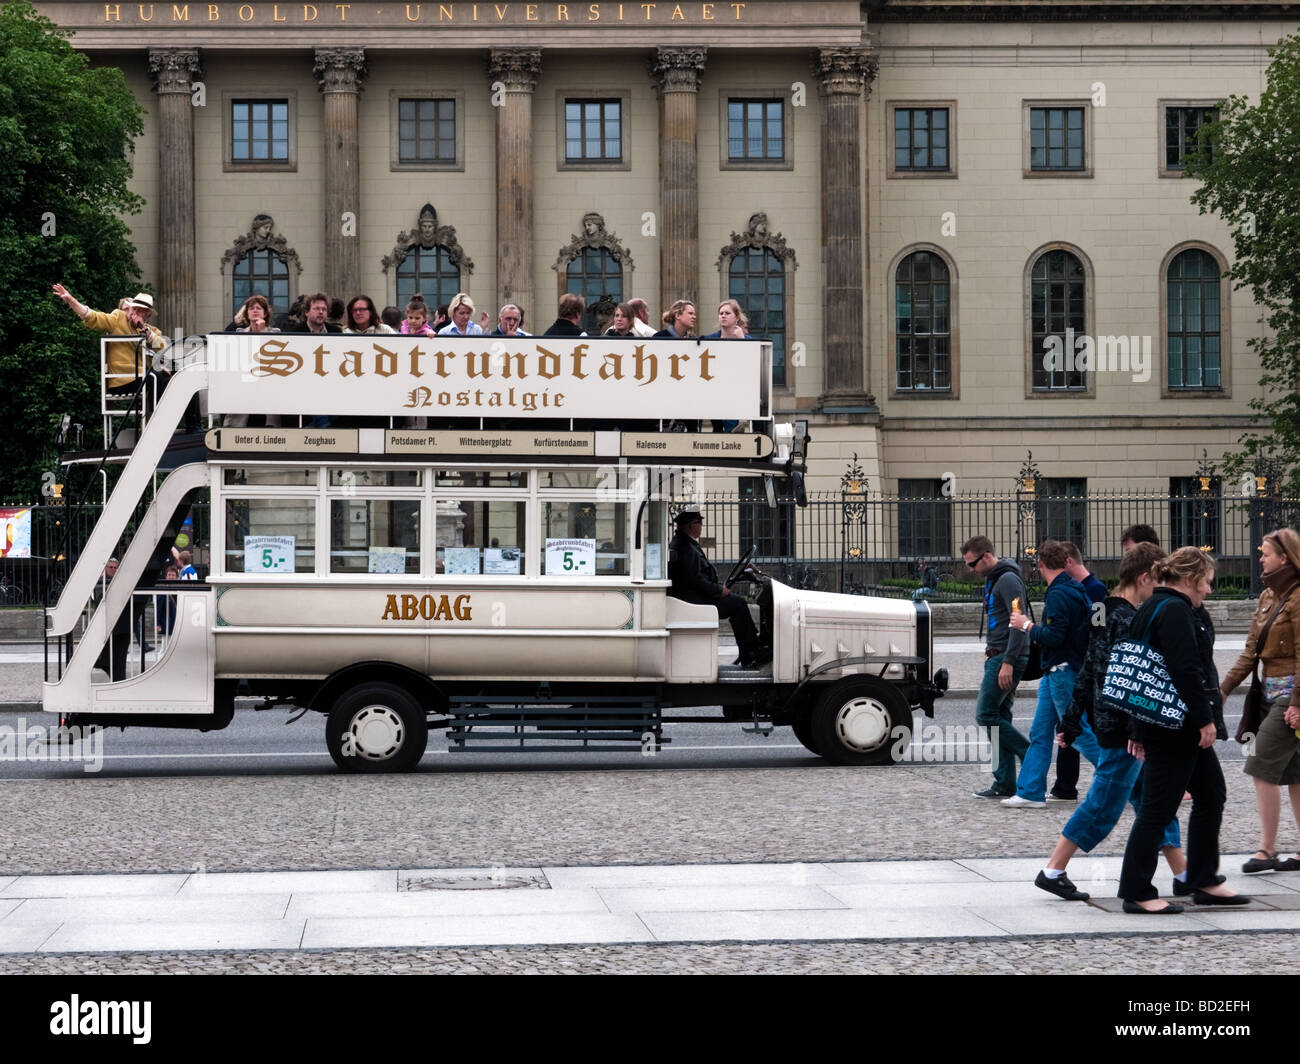 Vintage-Stil-nostalgischen Sightseeing-Bus gegenüber der Humboldt-Universität auf Unter Den Linden am Bebelplatz, Berlin, Deutschland Stockfoto